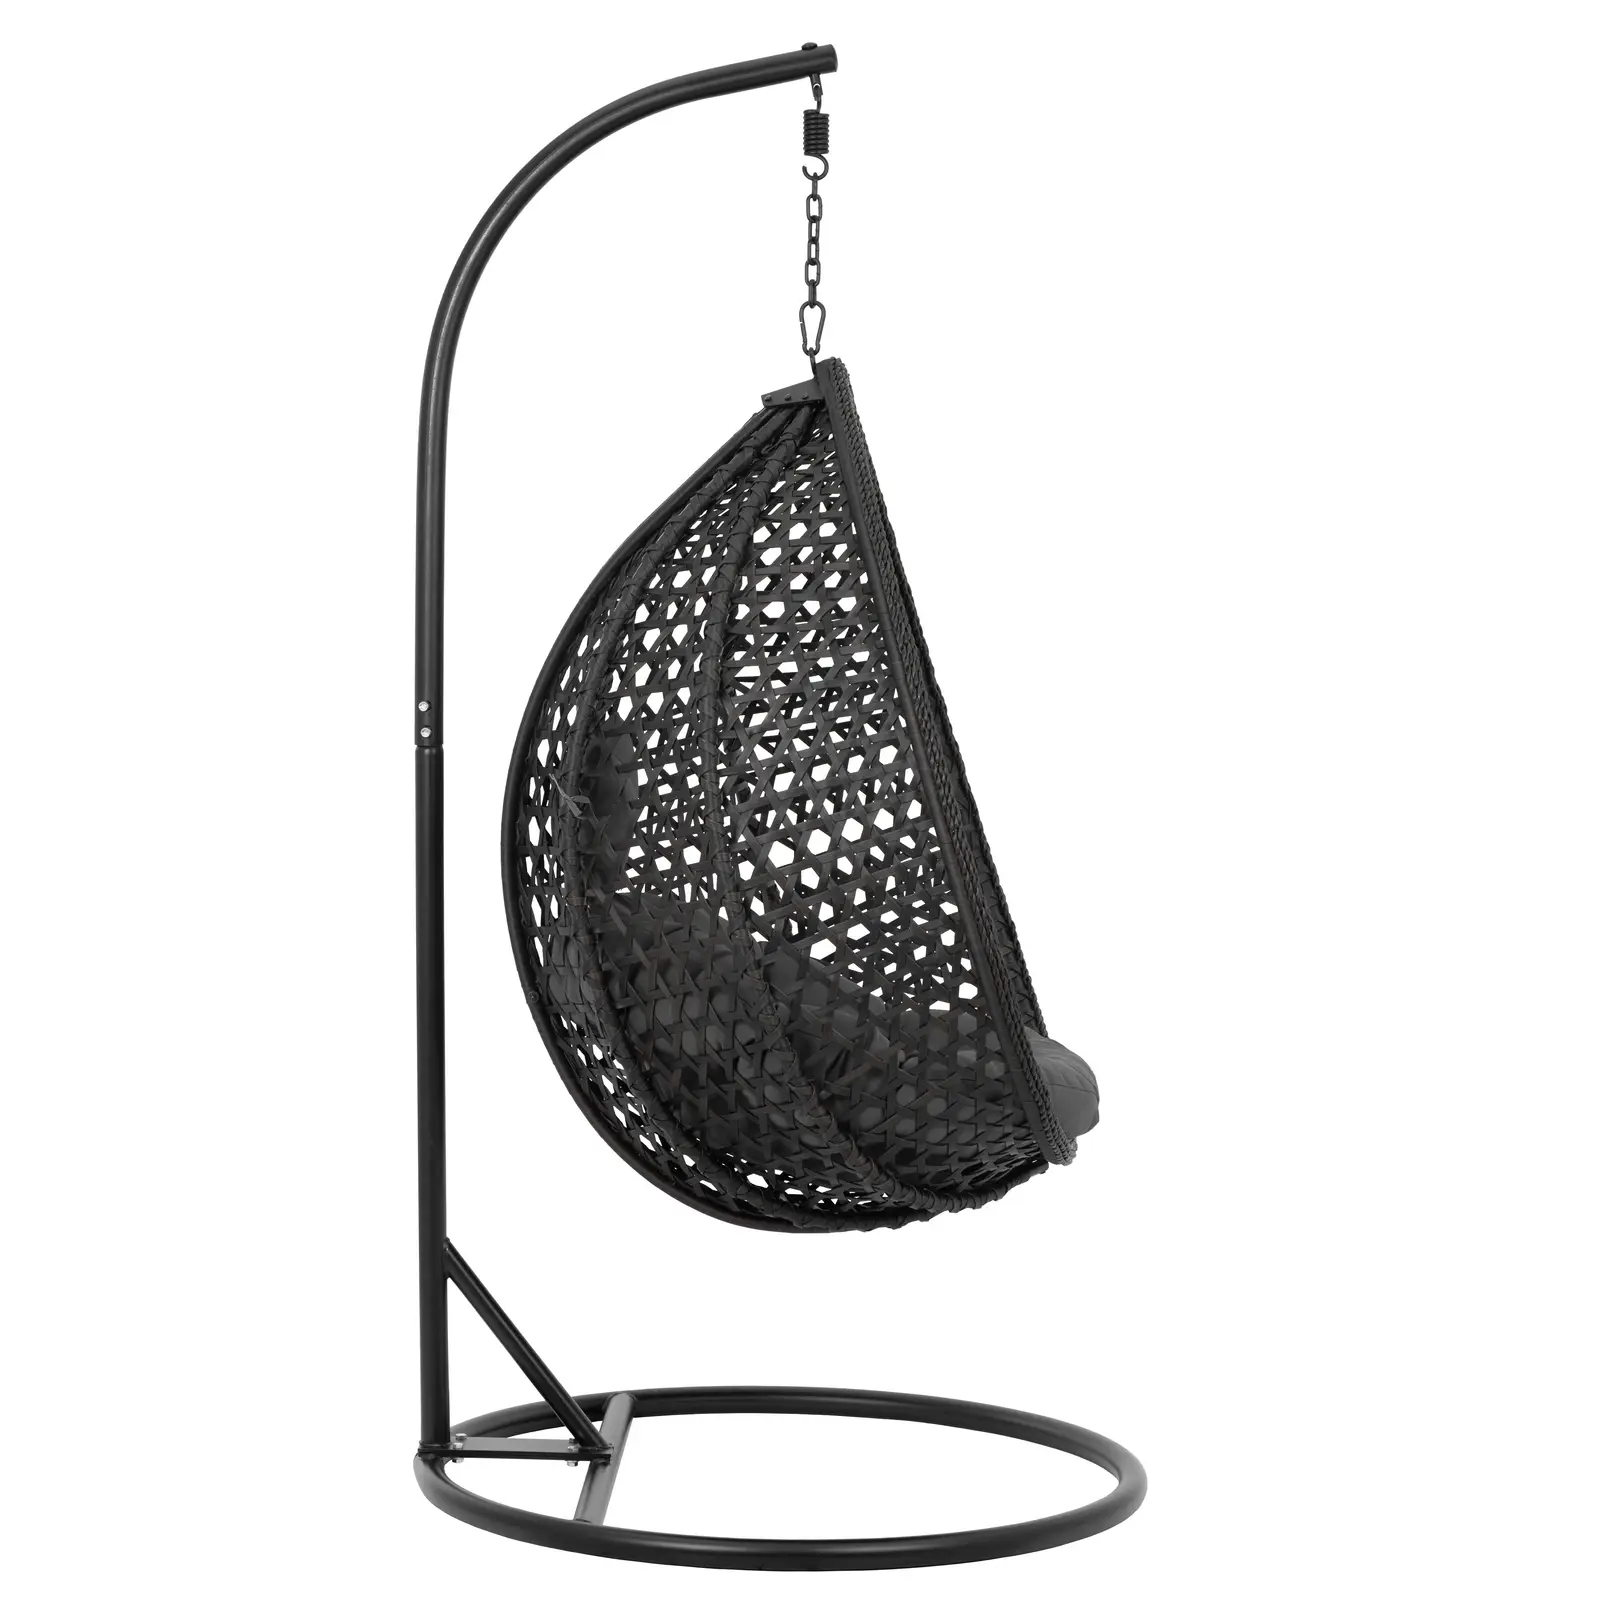 Hængestol udendørs - med stativ - sammenklappeligt sæde - sort og grå - dråbeformet